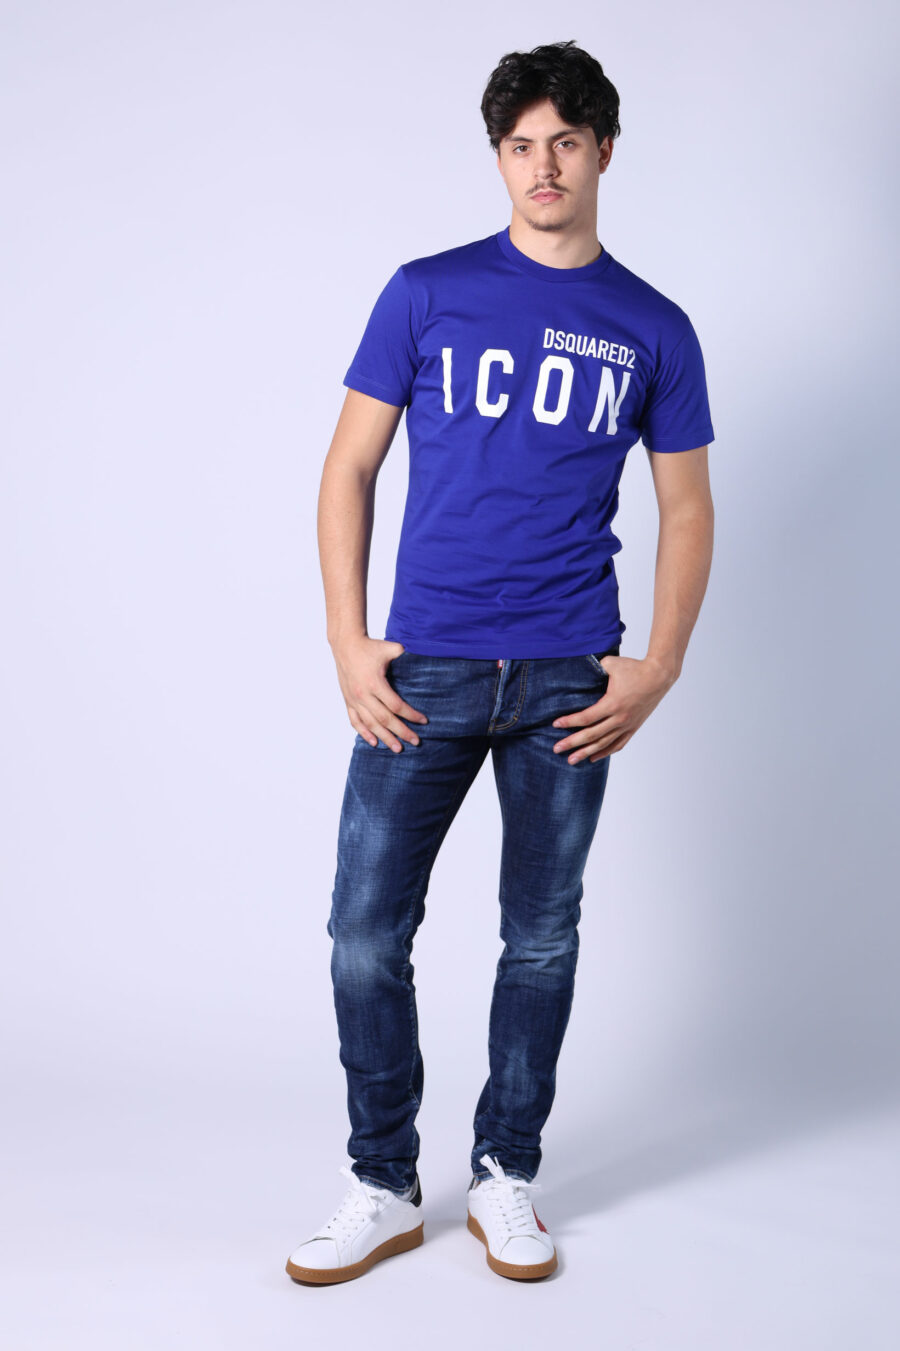 Electric blue t-shirt with white "icon" maxilogo - Untitled Catalog 05398